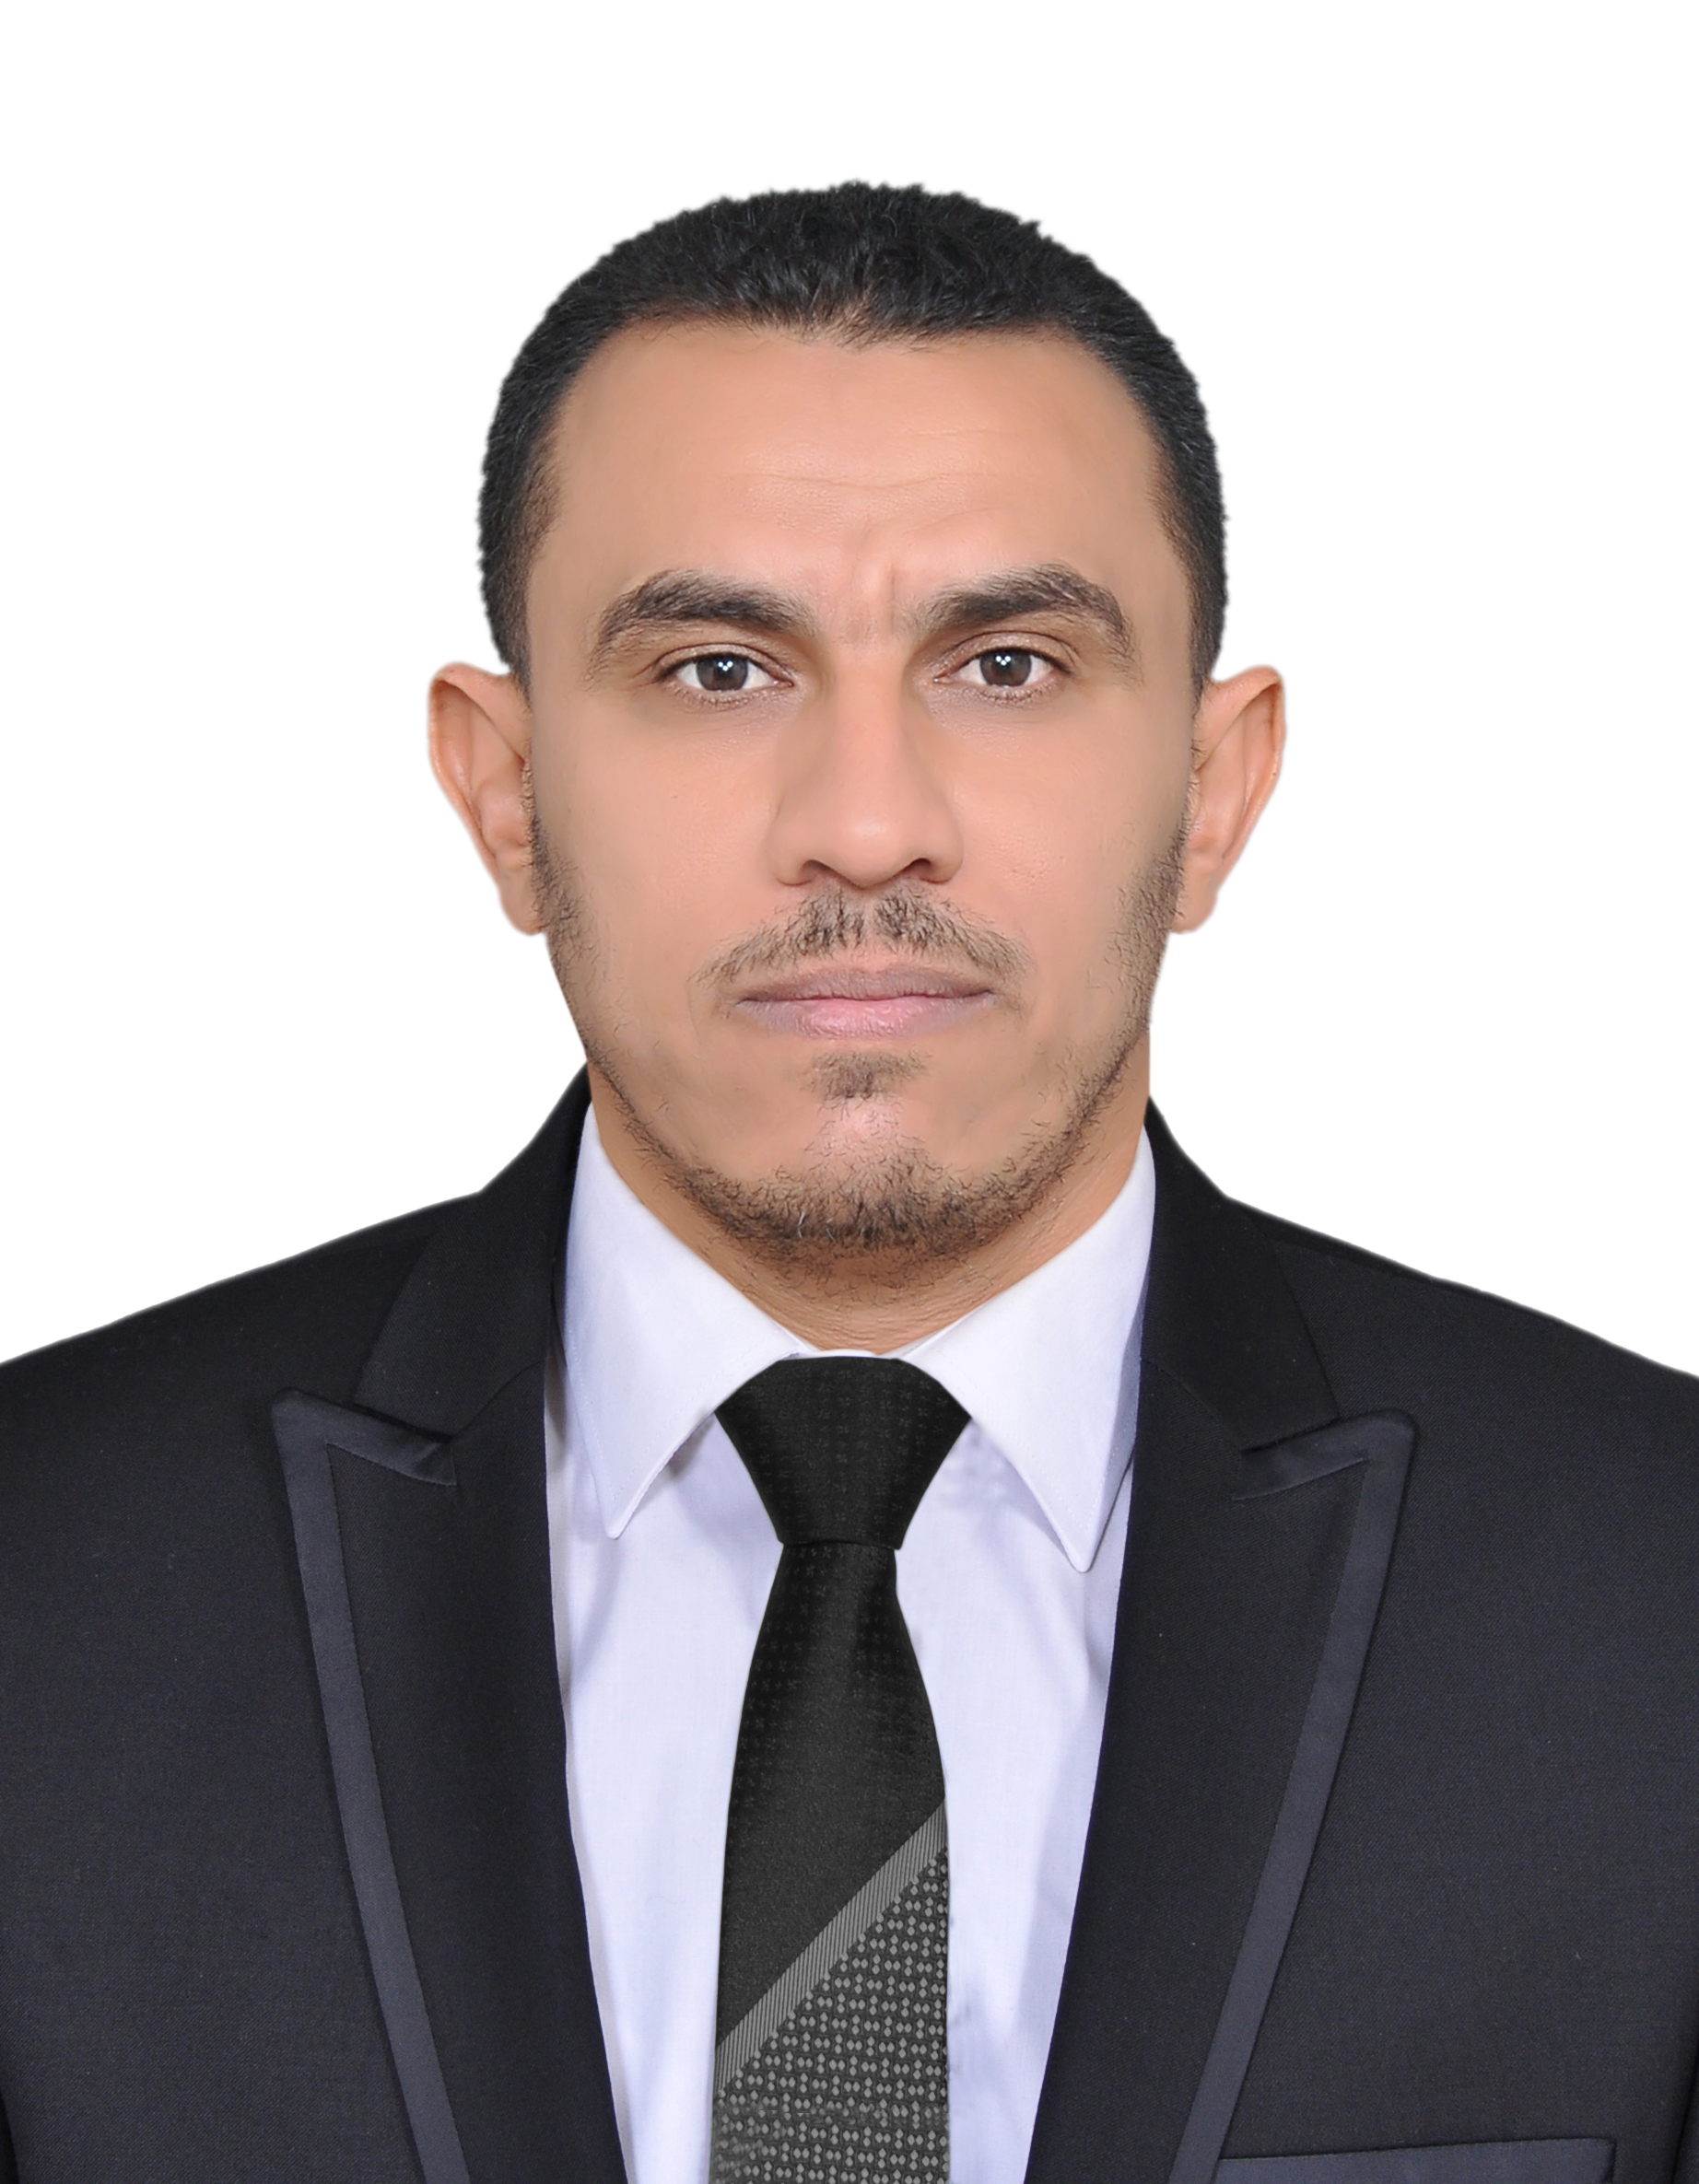 Duraid Hussein Bader Al-Yassen